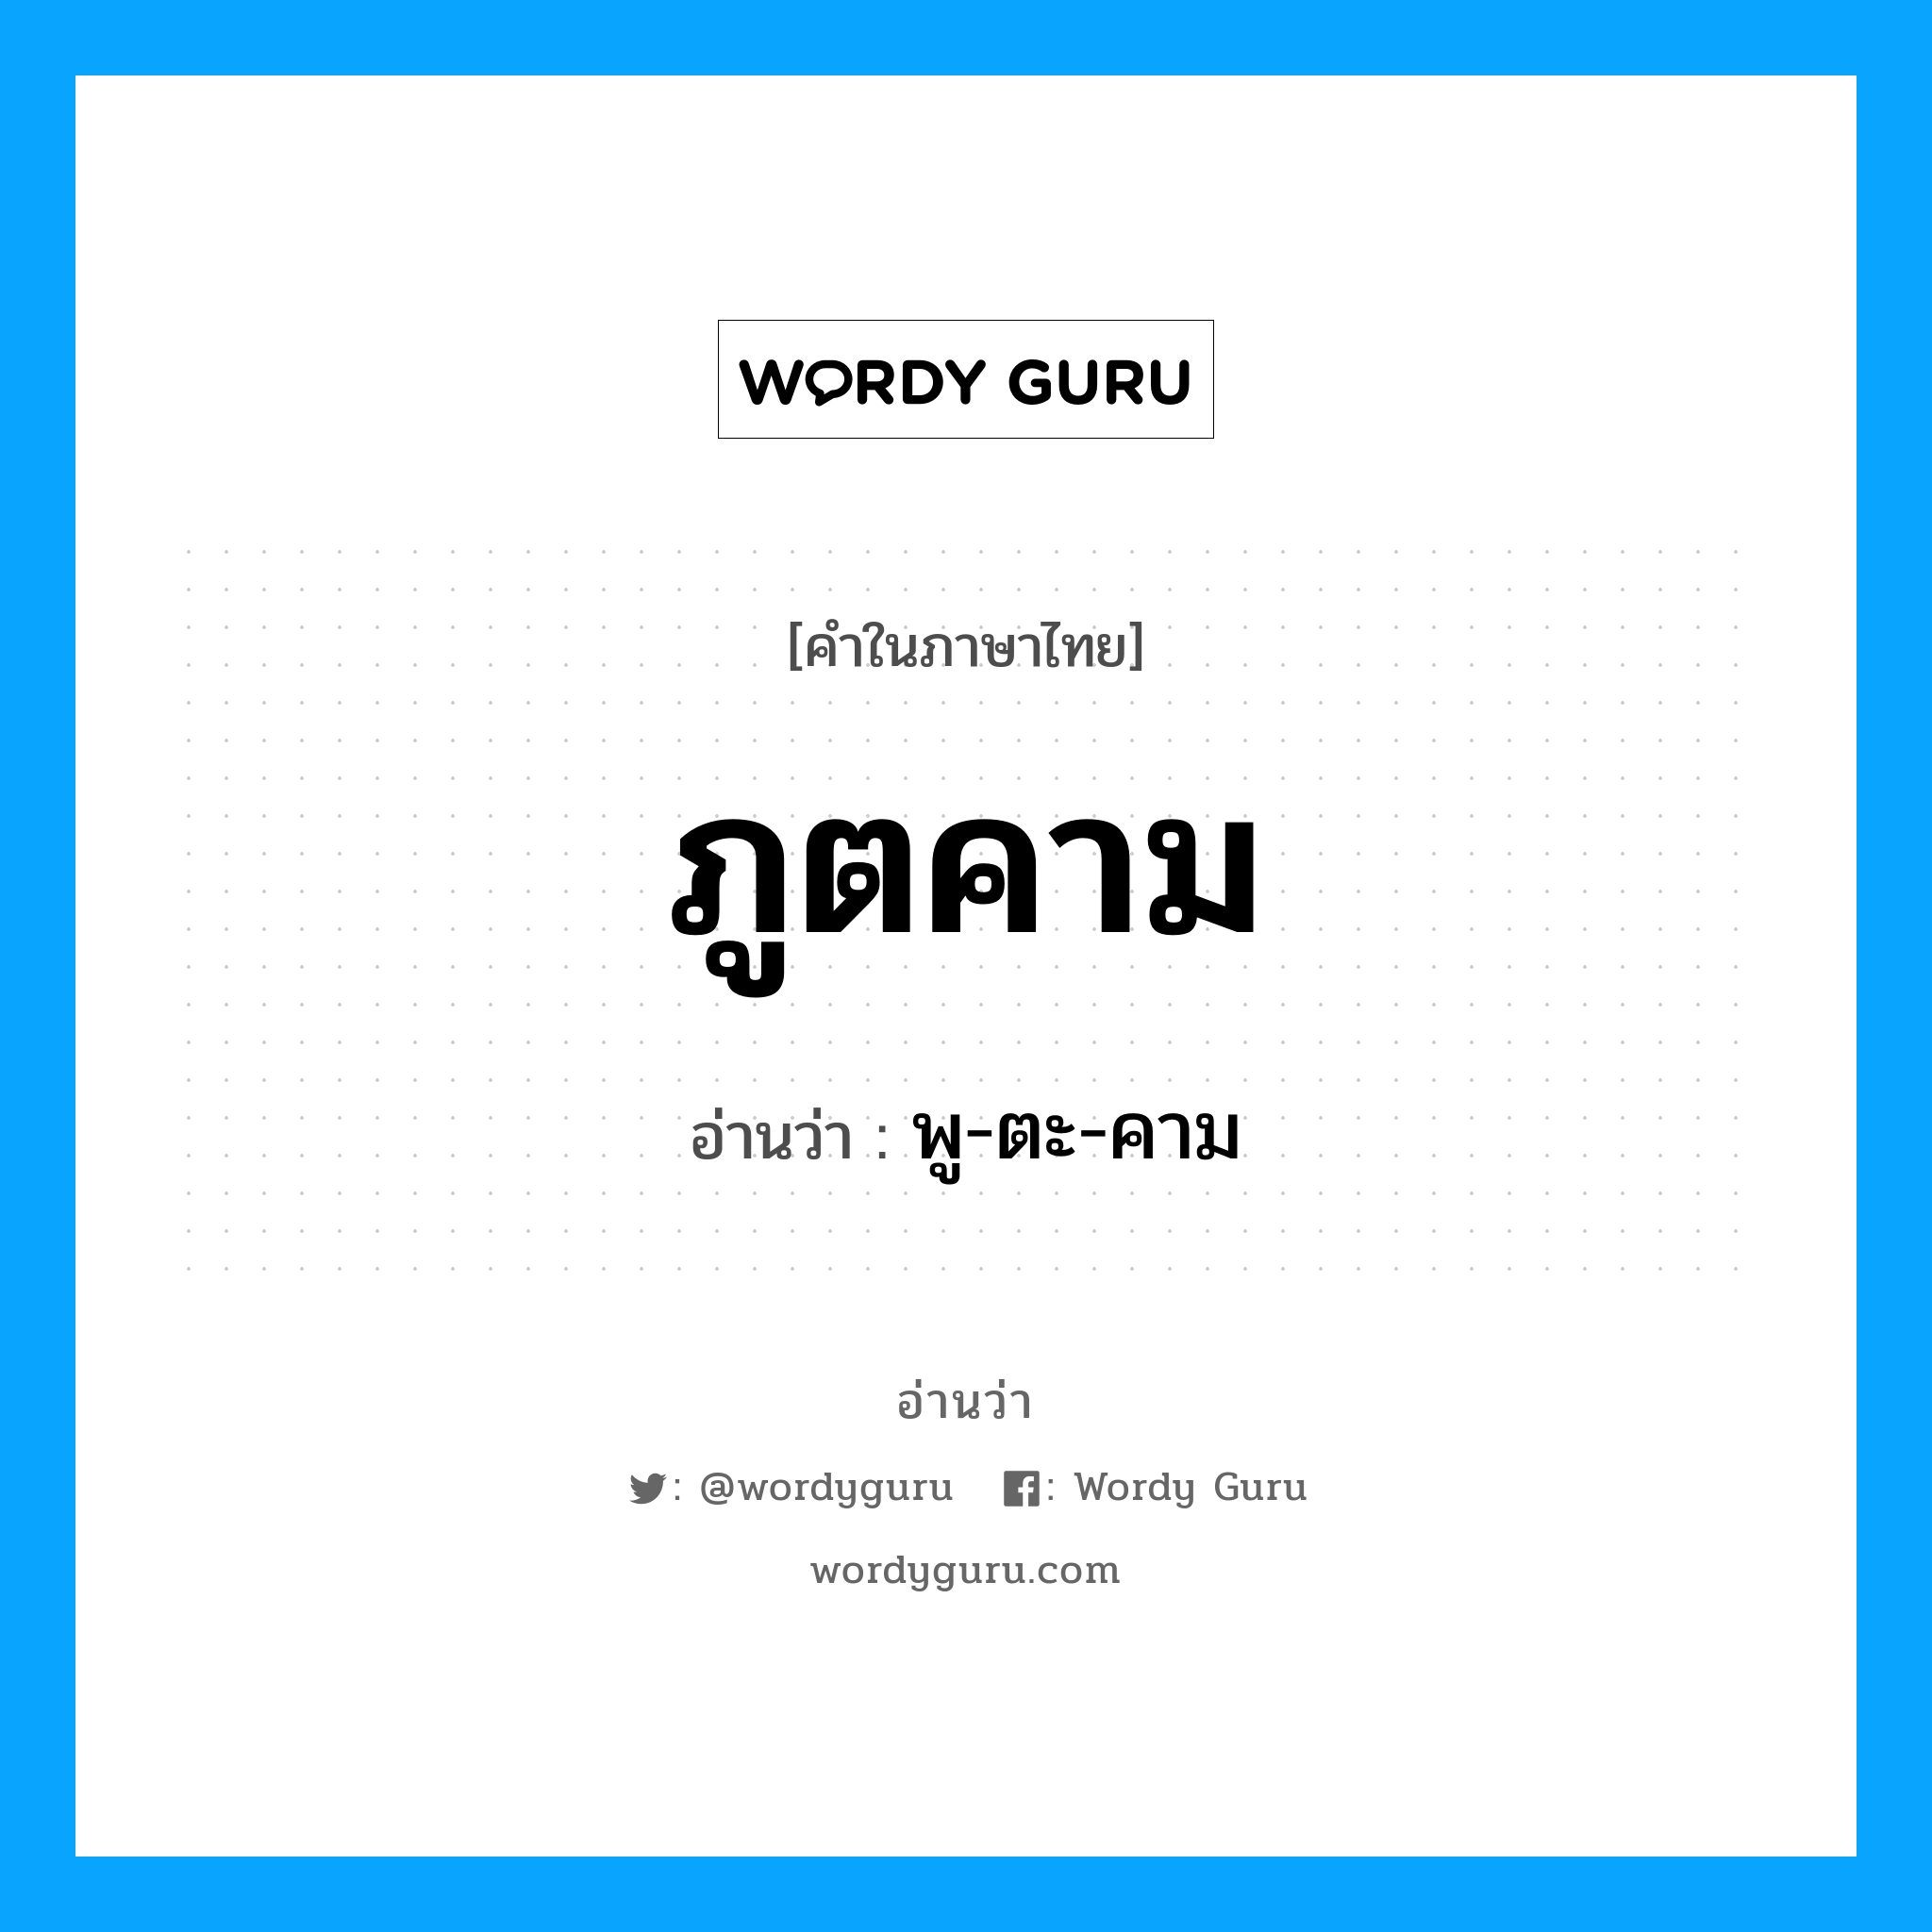 พู-ตะ-คาม เป็นคำอ่านของคำไหน?, คำในภาษาไทย พู-ตะ-คาม อ่านว่า ภูตคาม